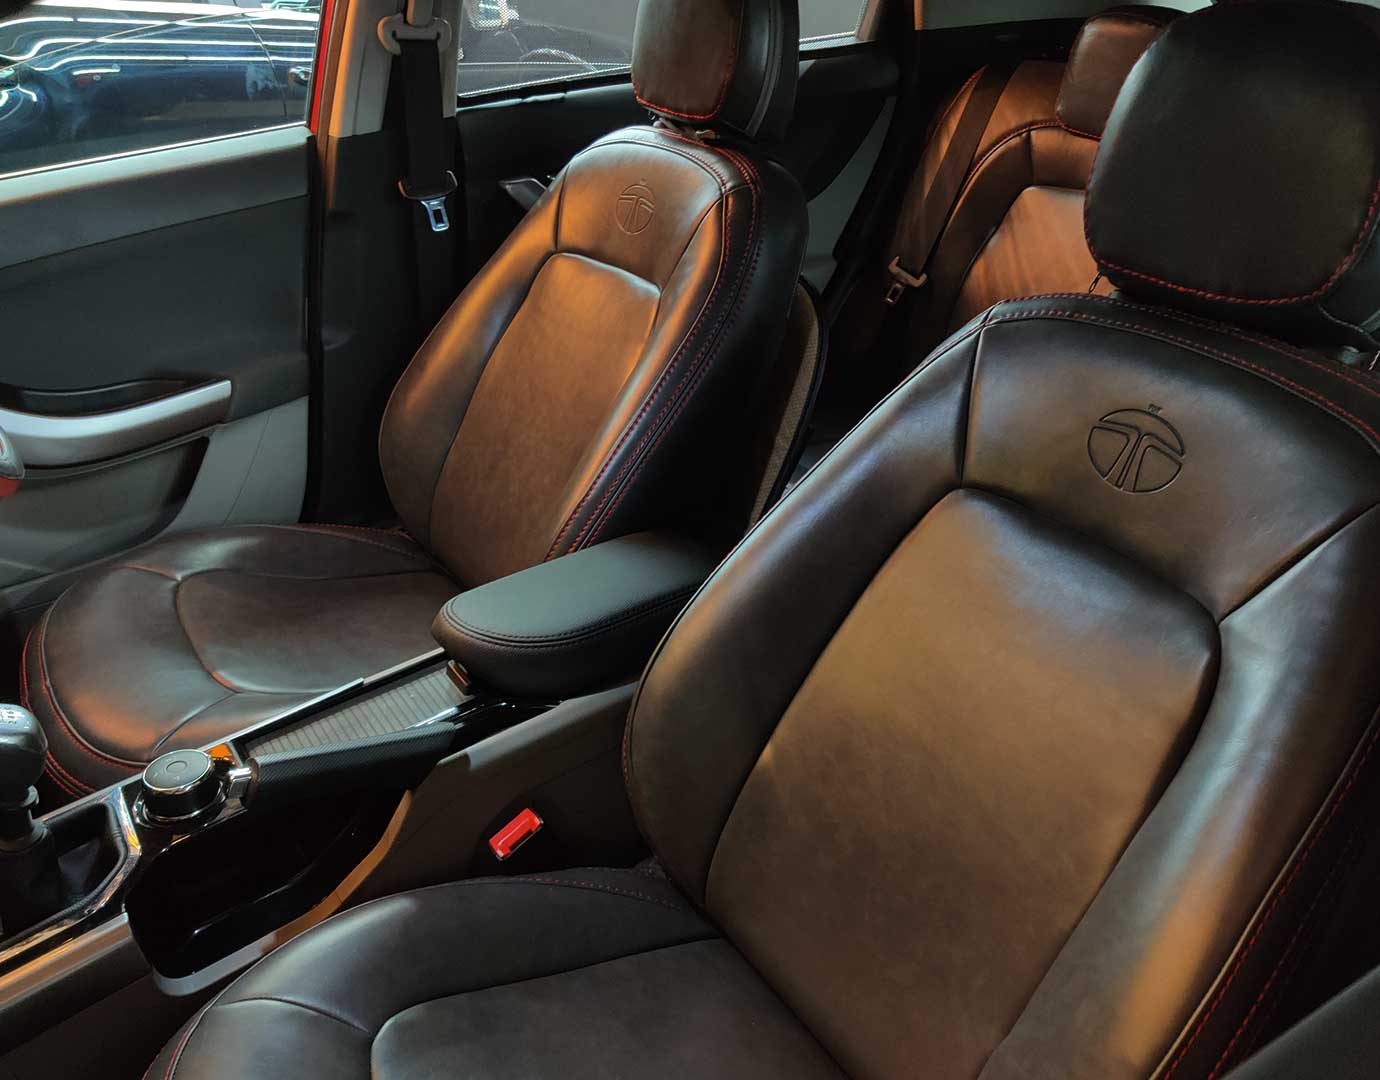 Tata seat covers